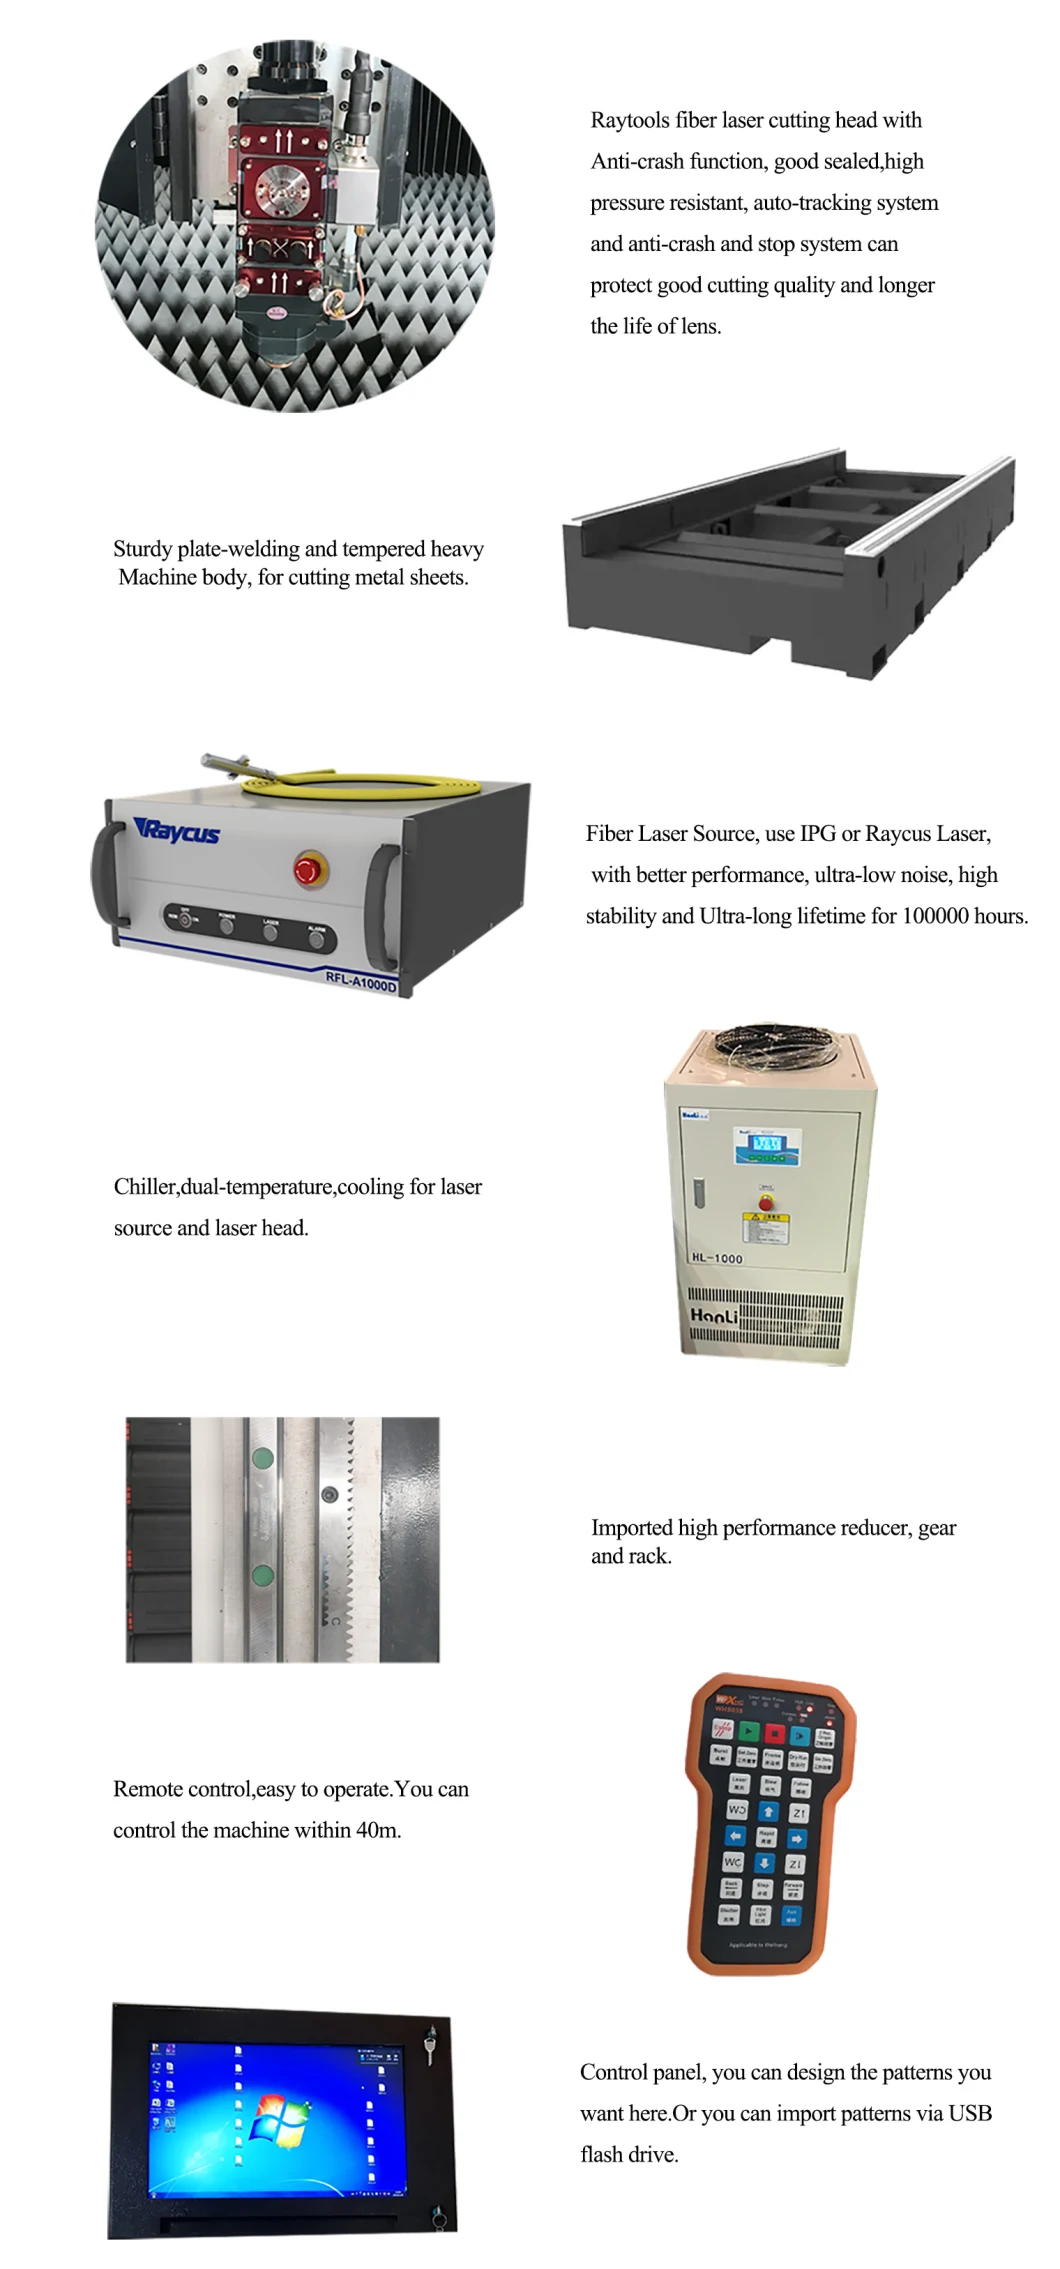 Kh-3015 Fiber Laser Cutting Machine Laser Cutting Machine Fiber CNC Laser Machine Price